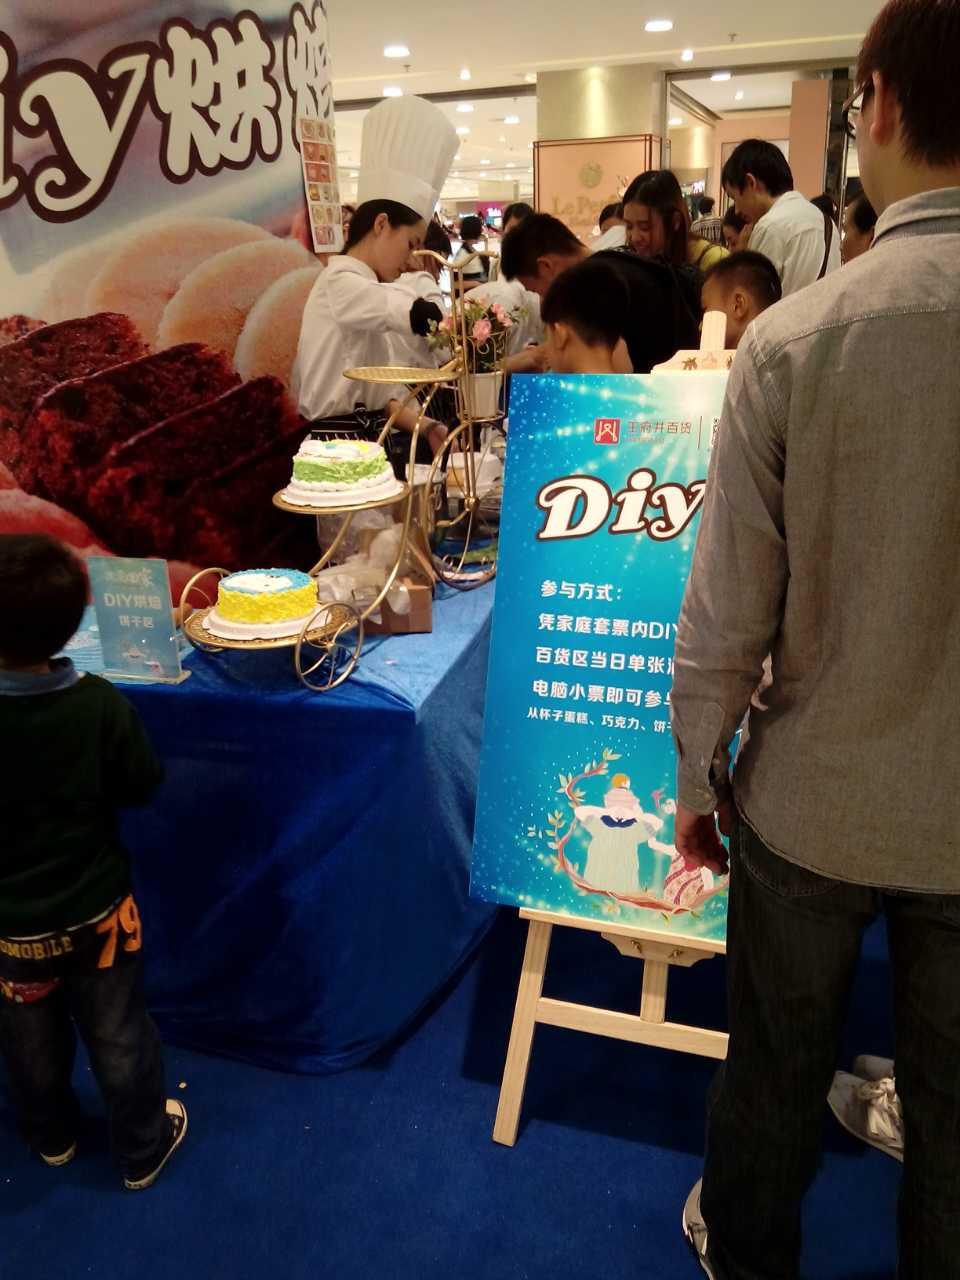 DIY蛋糕加盟、【甜咪公主】与王府井百货合作